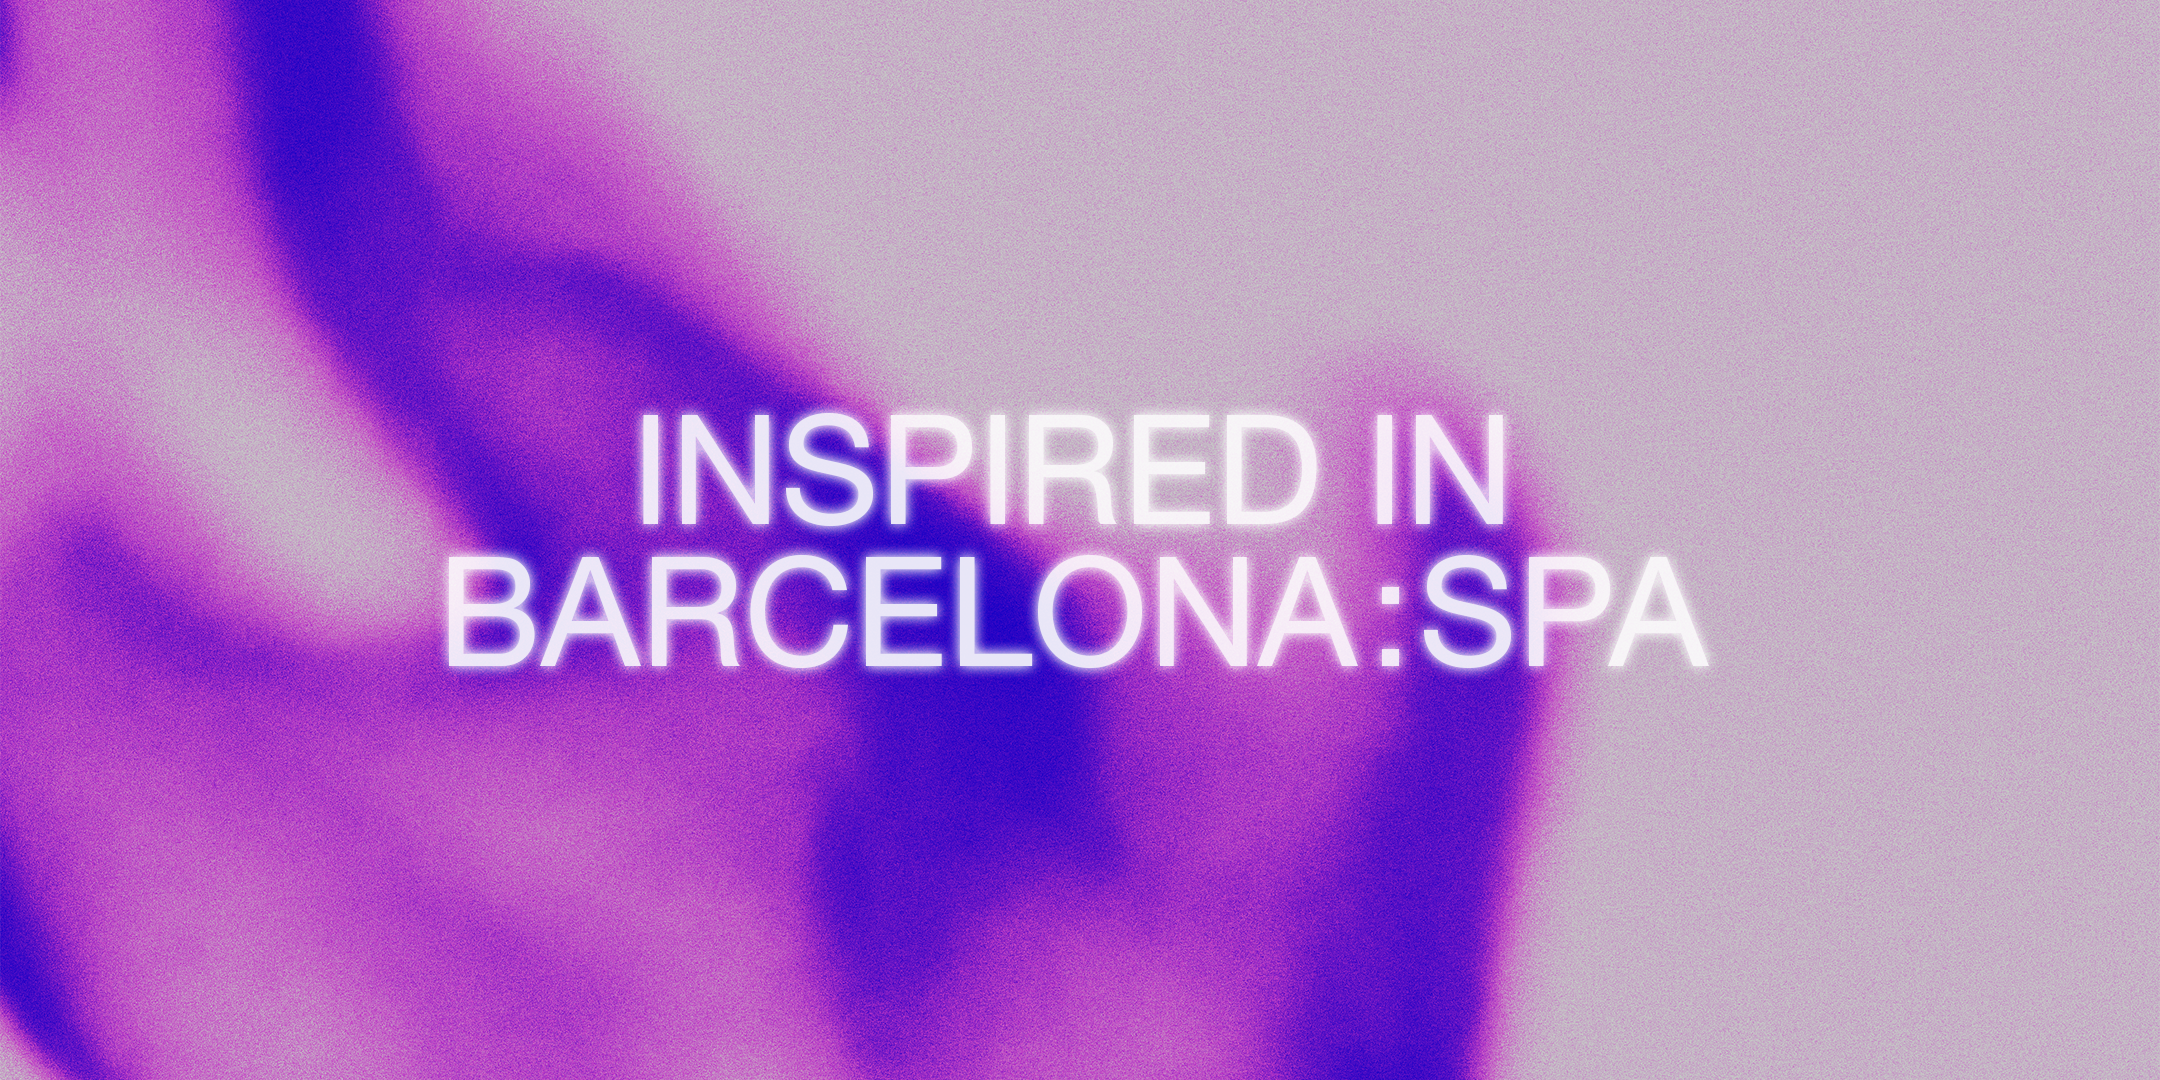 Inspired in Barcelona: Spa | Barcelona centre de Disseny